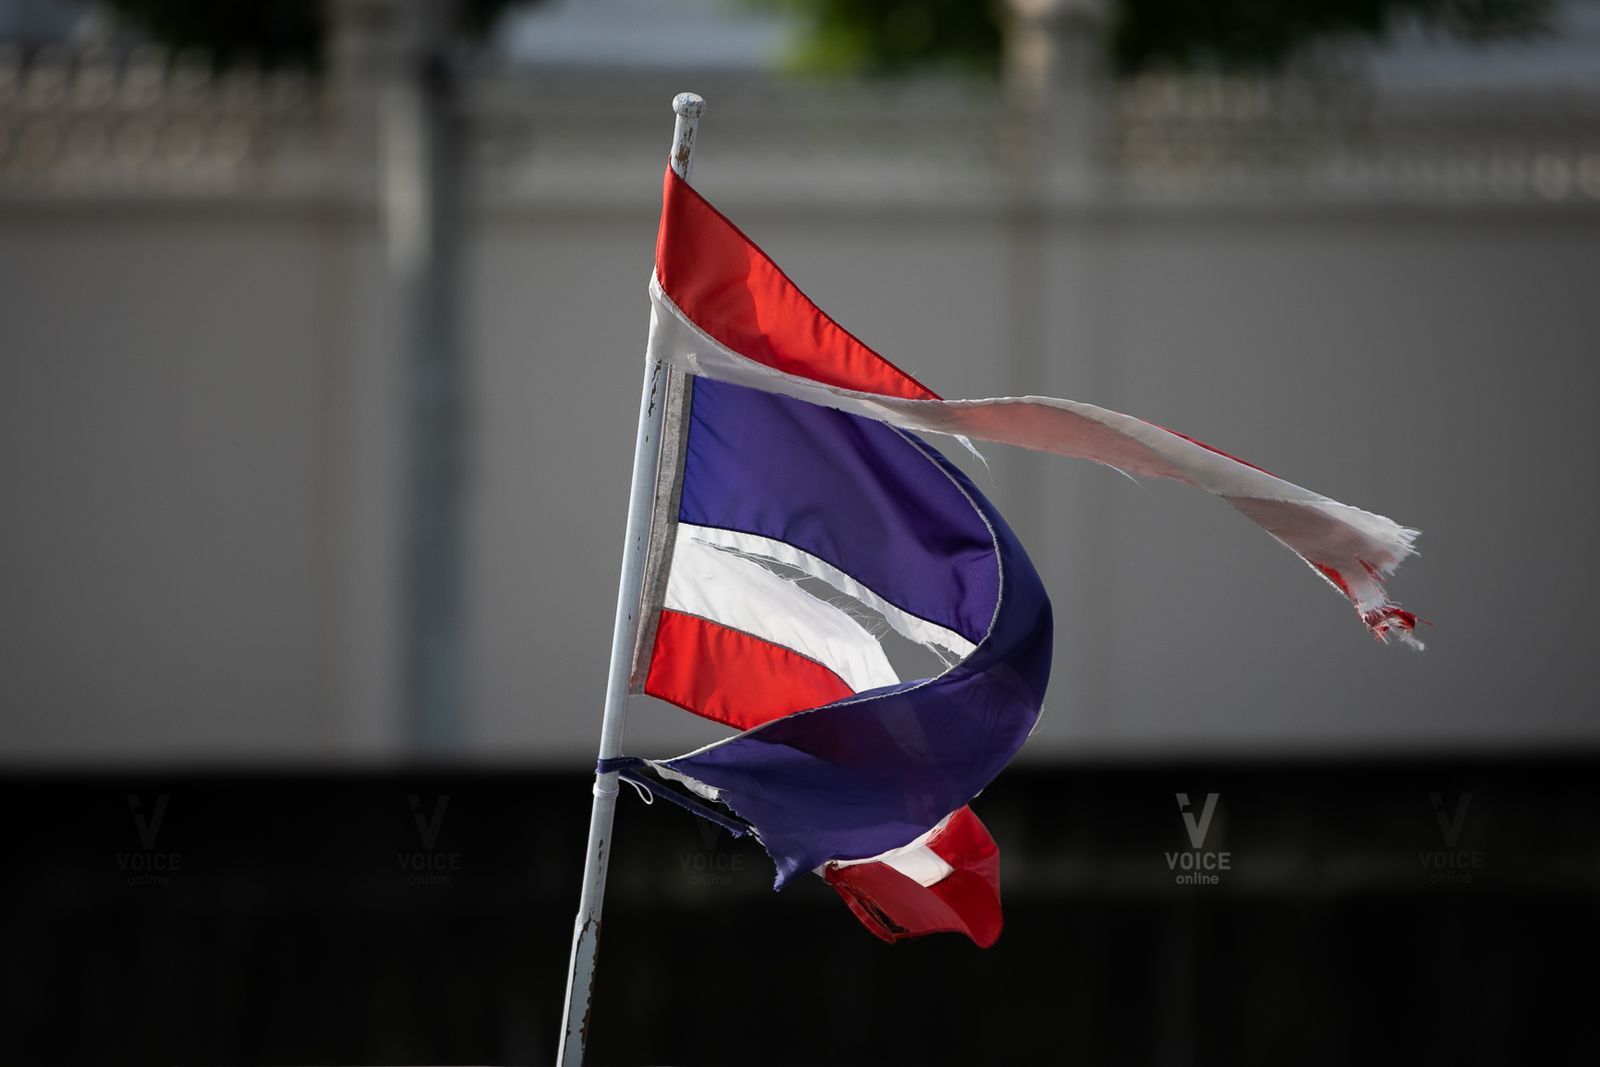 การเมือง ประเทศไทย ความขัดแย้ง ปฏิรูปสถาบัน ยุทธศาสตร์ชาติ รัฐประหาร ปรองดอง สมานฉันท์ ฉันทามติ